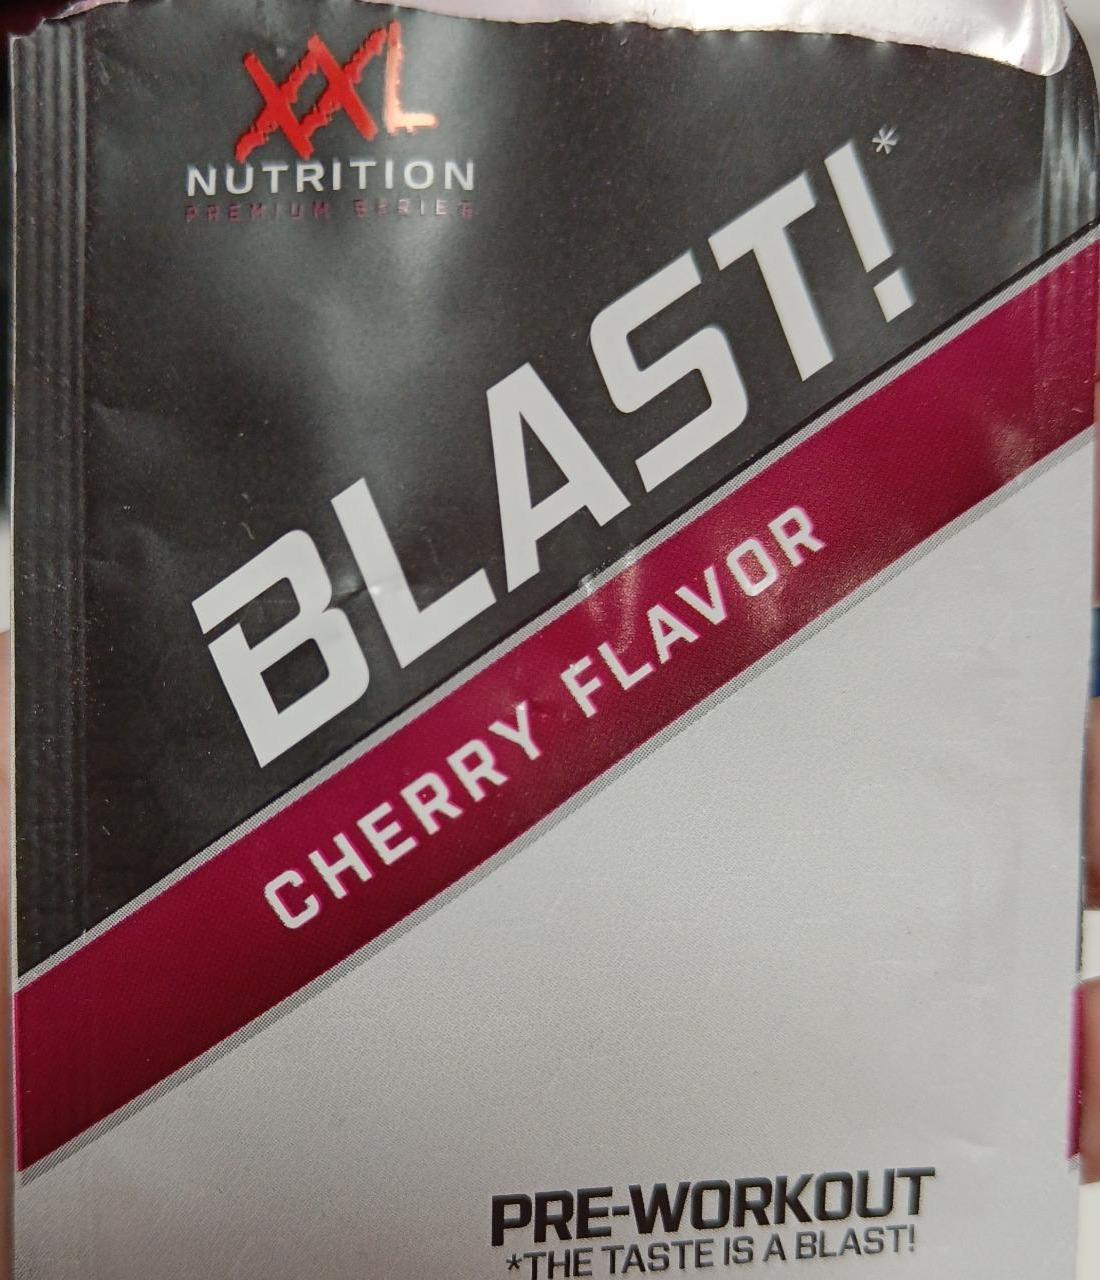 Fotografie - Blast! Pre-workout Cherry flavor XXL Nutrition